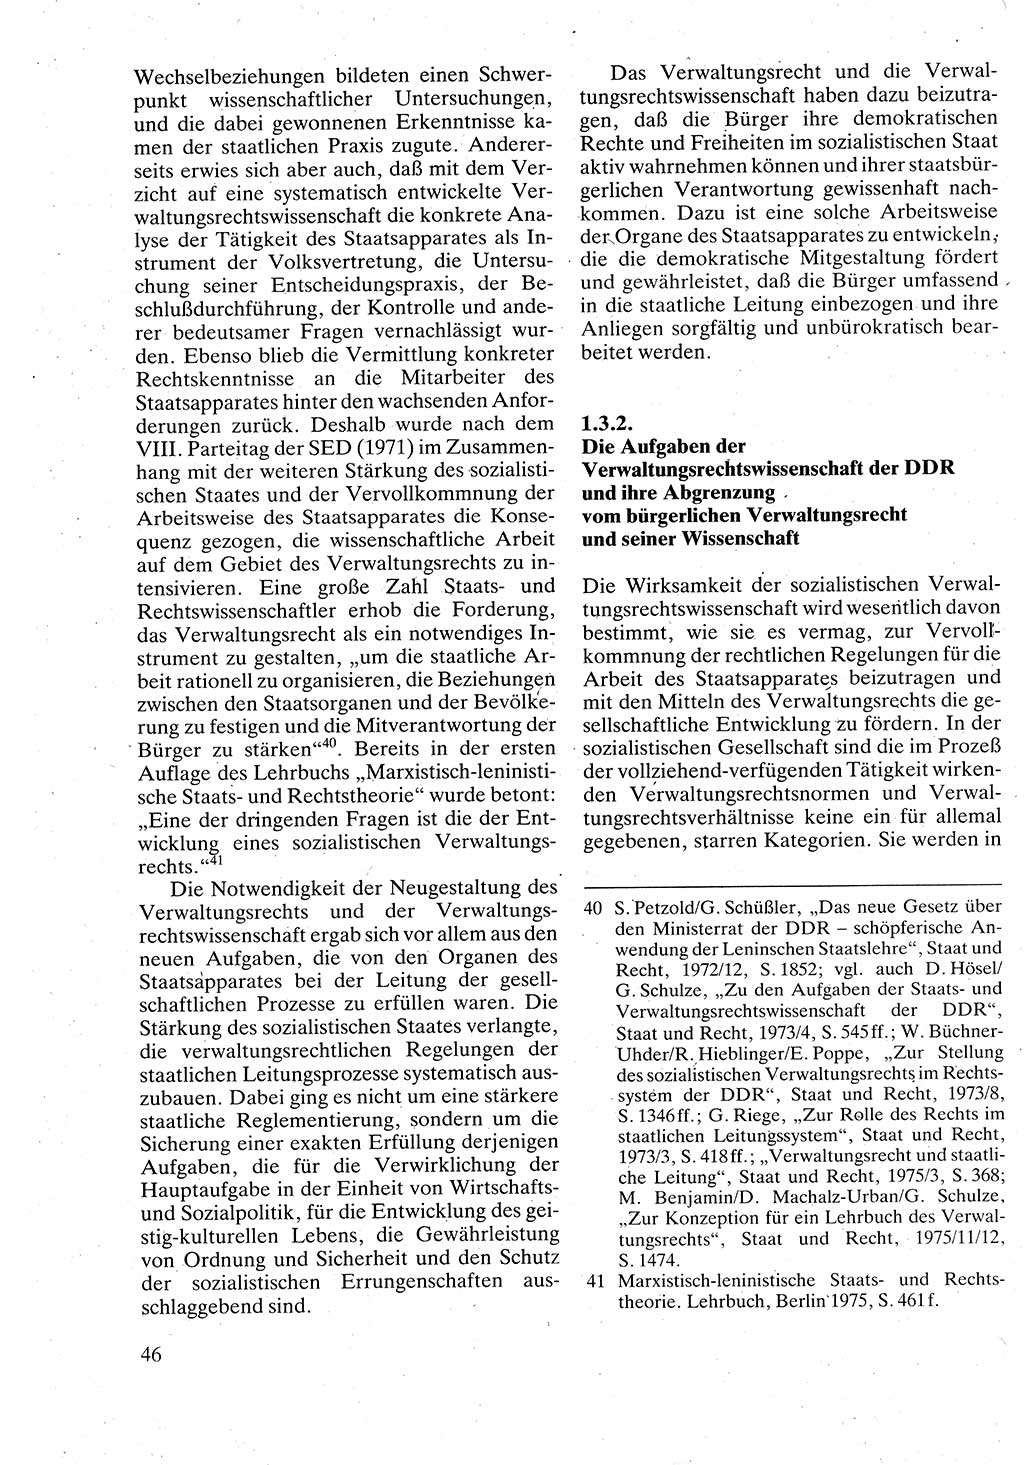 Verwaltungsrecht [Deutsche Demokratische Republik (DDR)], Lehrbuch 1988, Seite 46 (Verw.-R. DDR Lb. 1988, S. 46)